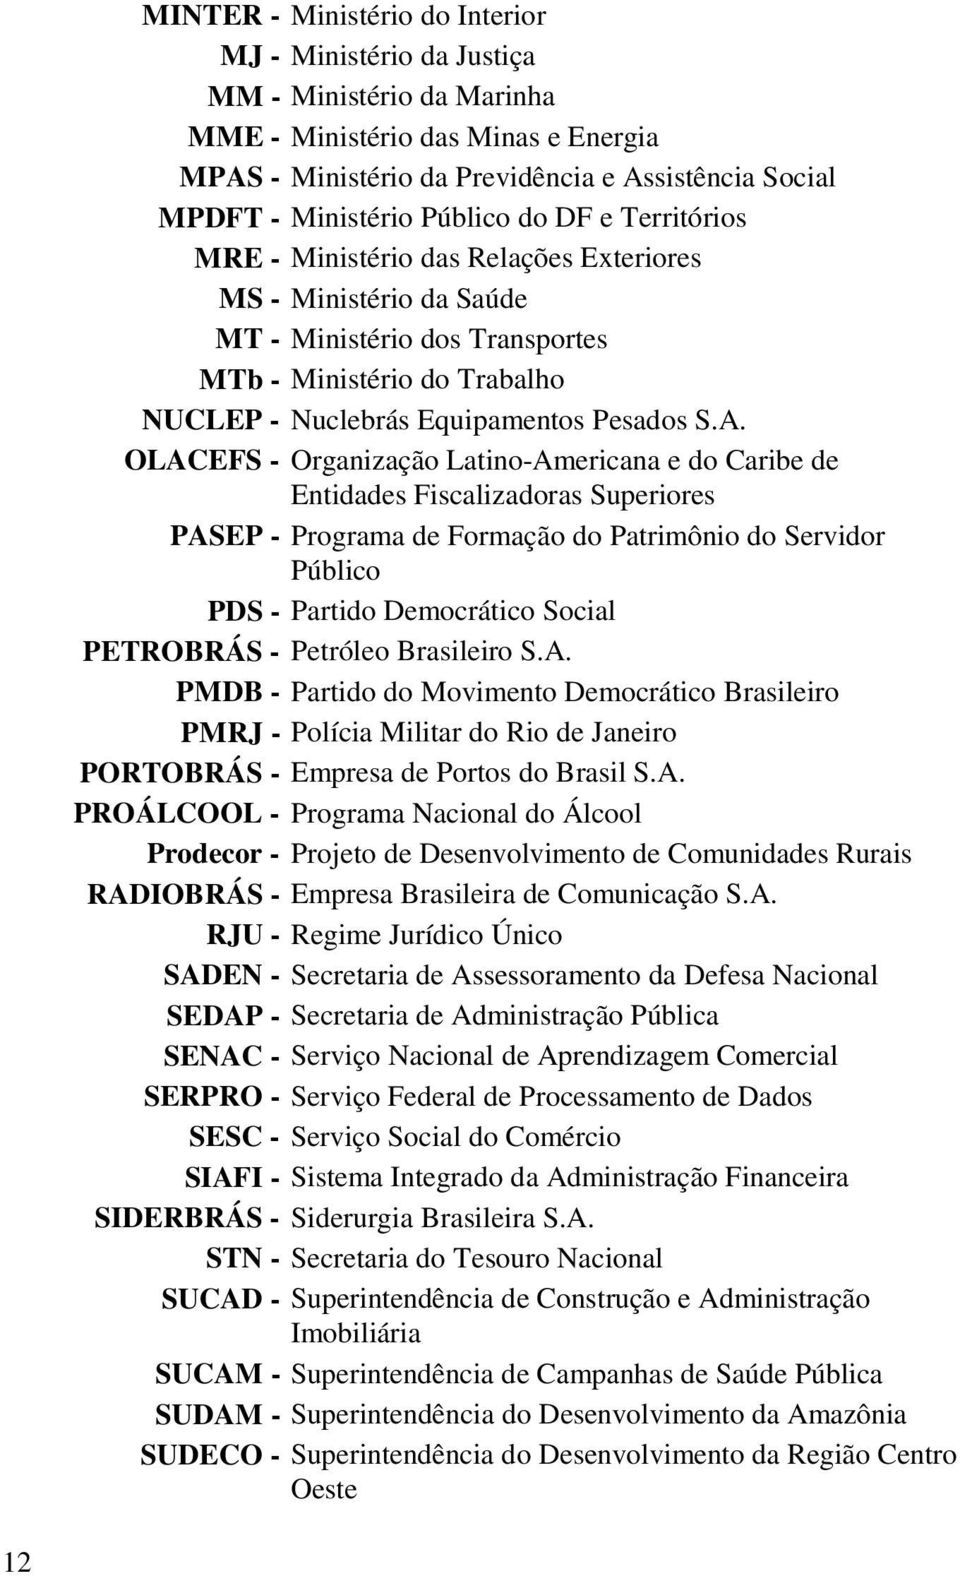 OLACEFS - Organização Latino-Americana e do Caribe de Entidades Fiscalizadoras Superiores PASEP - Programa de Formação do Patrimônio do Servidor Público PDS - Partido Democrático Social PETROBRÁS -